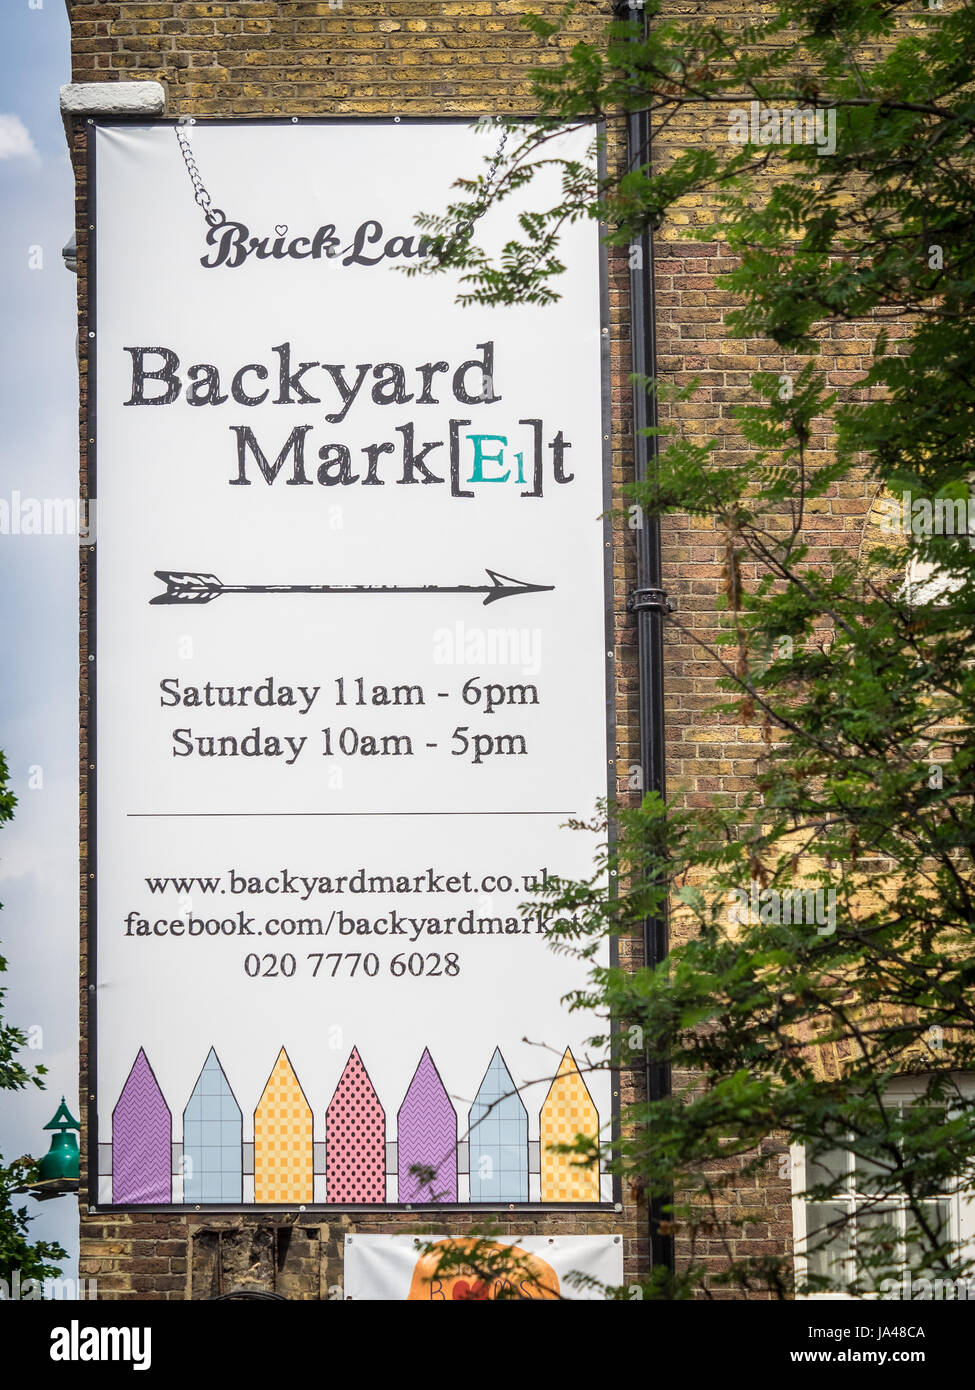 Signo para el patio fuera del mercado popular de Londres Brick Lane. El mercado está abierto los fines de semana y muy popular entre los turistas y lugareños por igual. Foto de stock